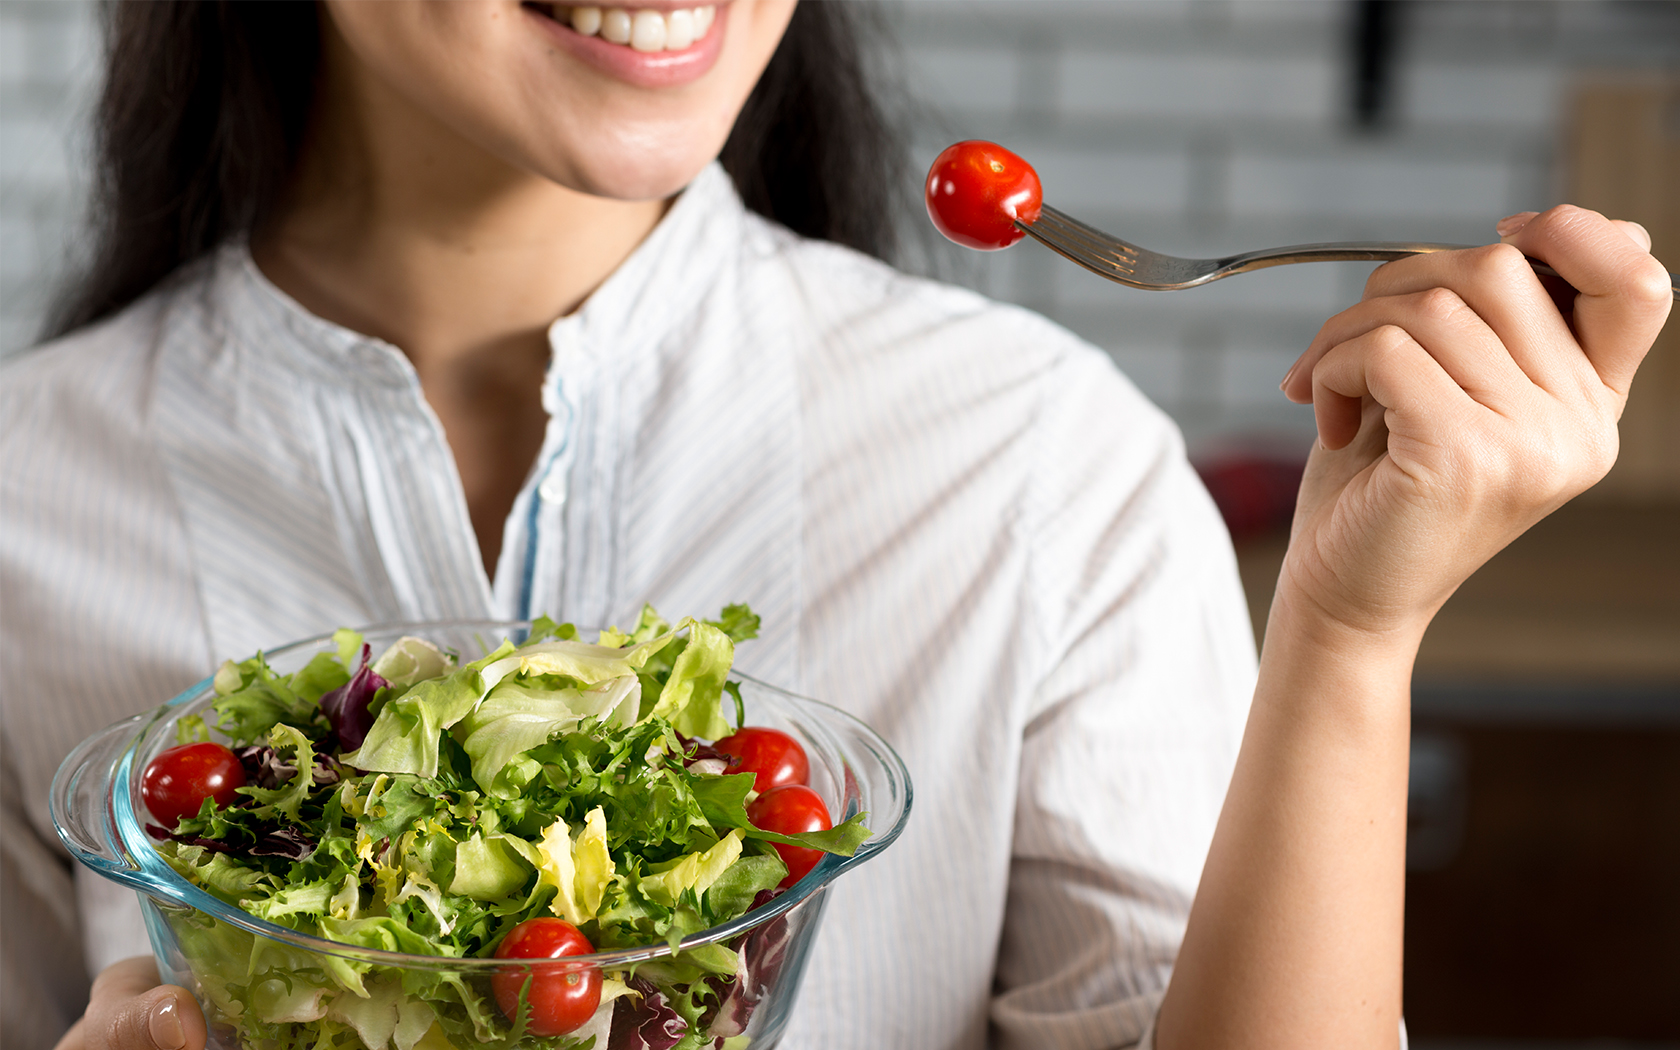 beslenme, sağlık, sağlıklı beslenme, sağlıklı besin, meyve, sebze, yeşillik, salata, gıda, yemek, organik gıda, organik sebze, organik meyve, doğal meyve, doğal sebze, faydalı besinler, zararlı besinler, zararlı gıdalar